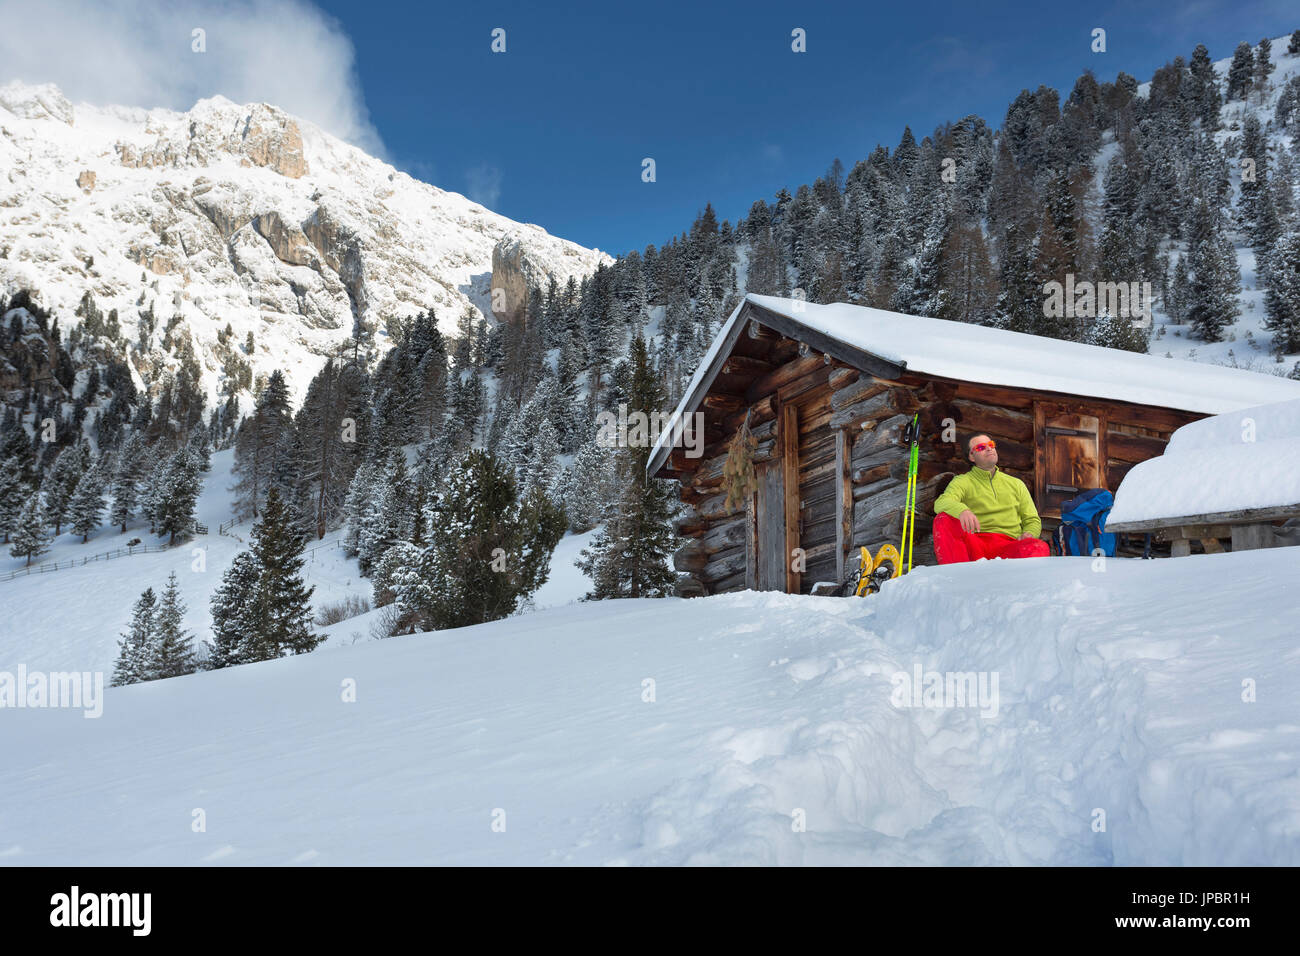 ein Winter Wandern mit Schneeschuhen im Naturpark Puez Geisler mit einer Person von einer alten Hütte sitzen und Blick auf die Berge Bozen Provinz, Südtirol, Trentino Alto Adige, Italien, Europa Stockfoto